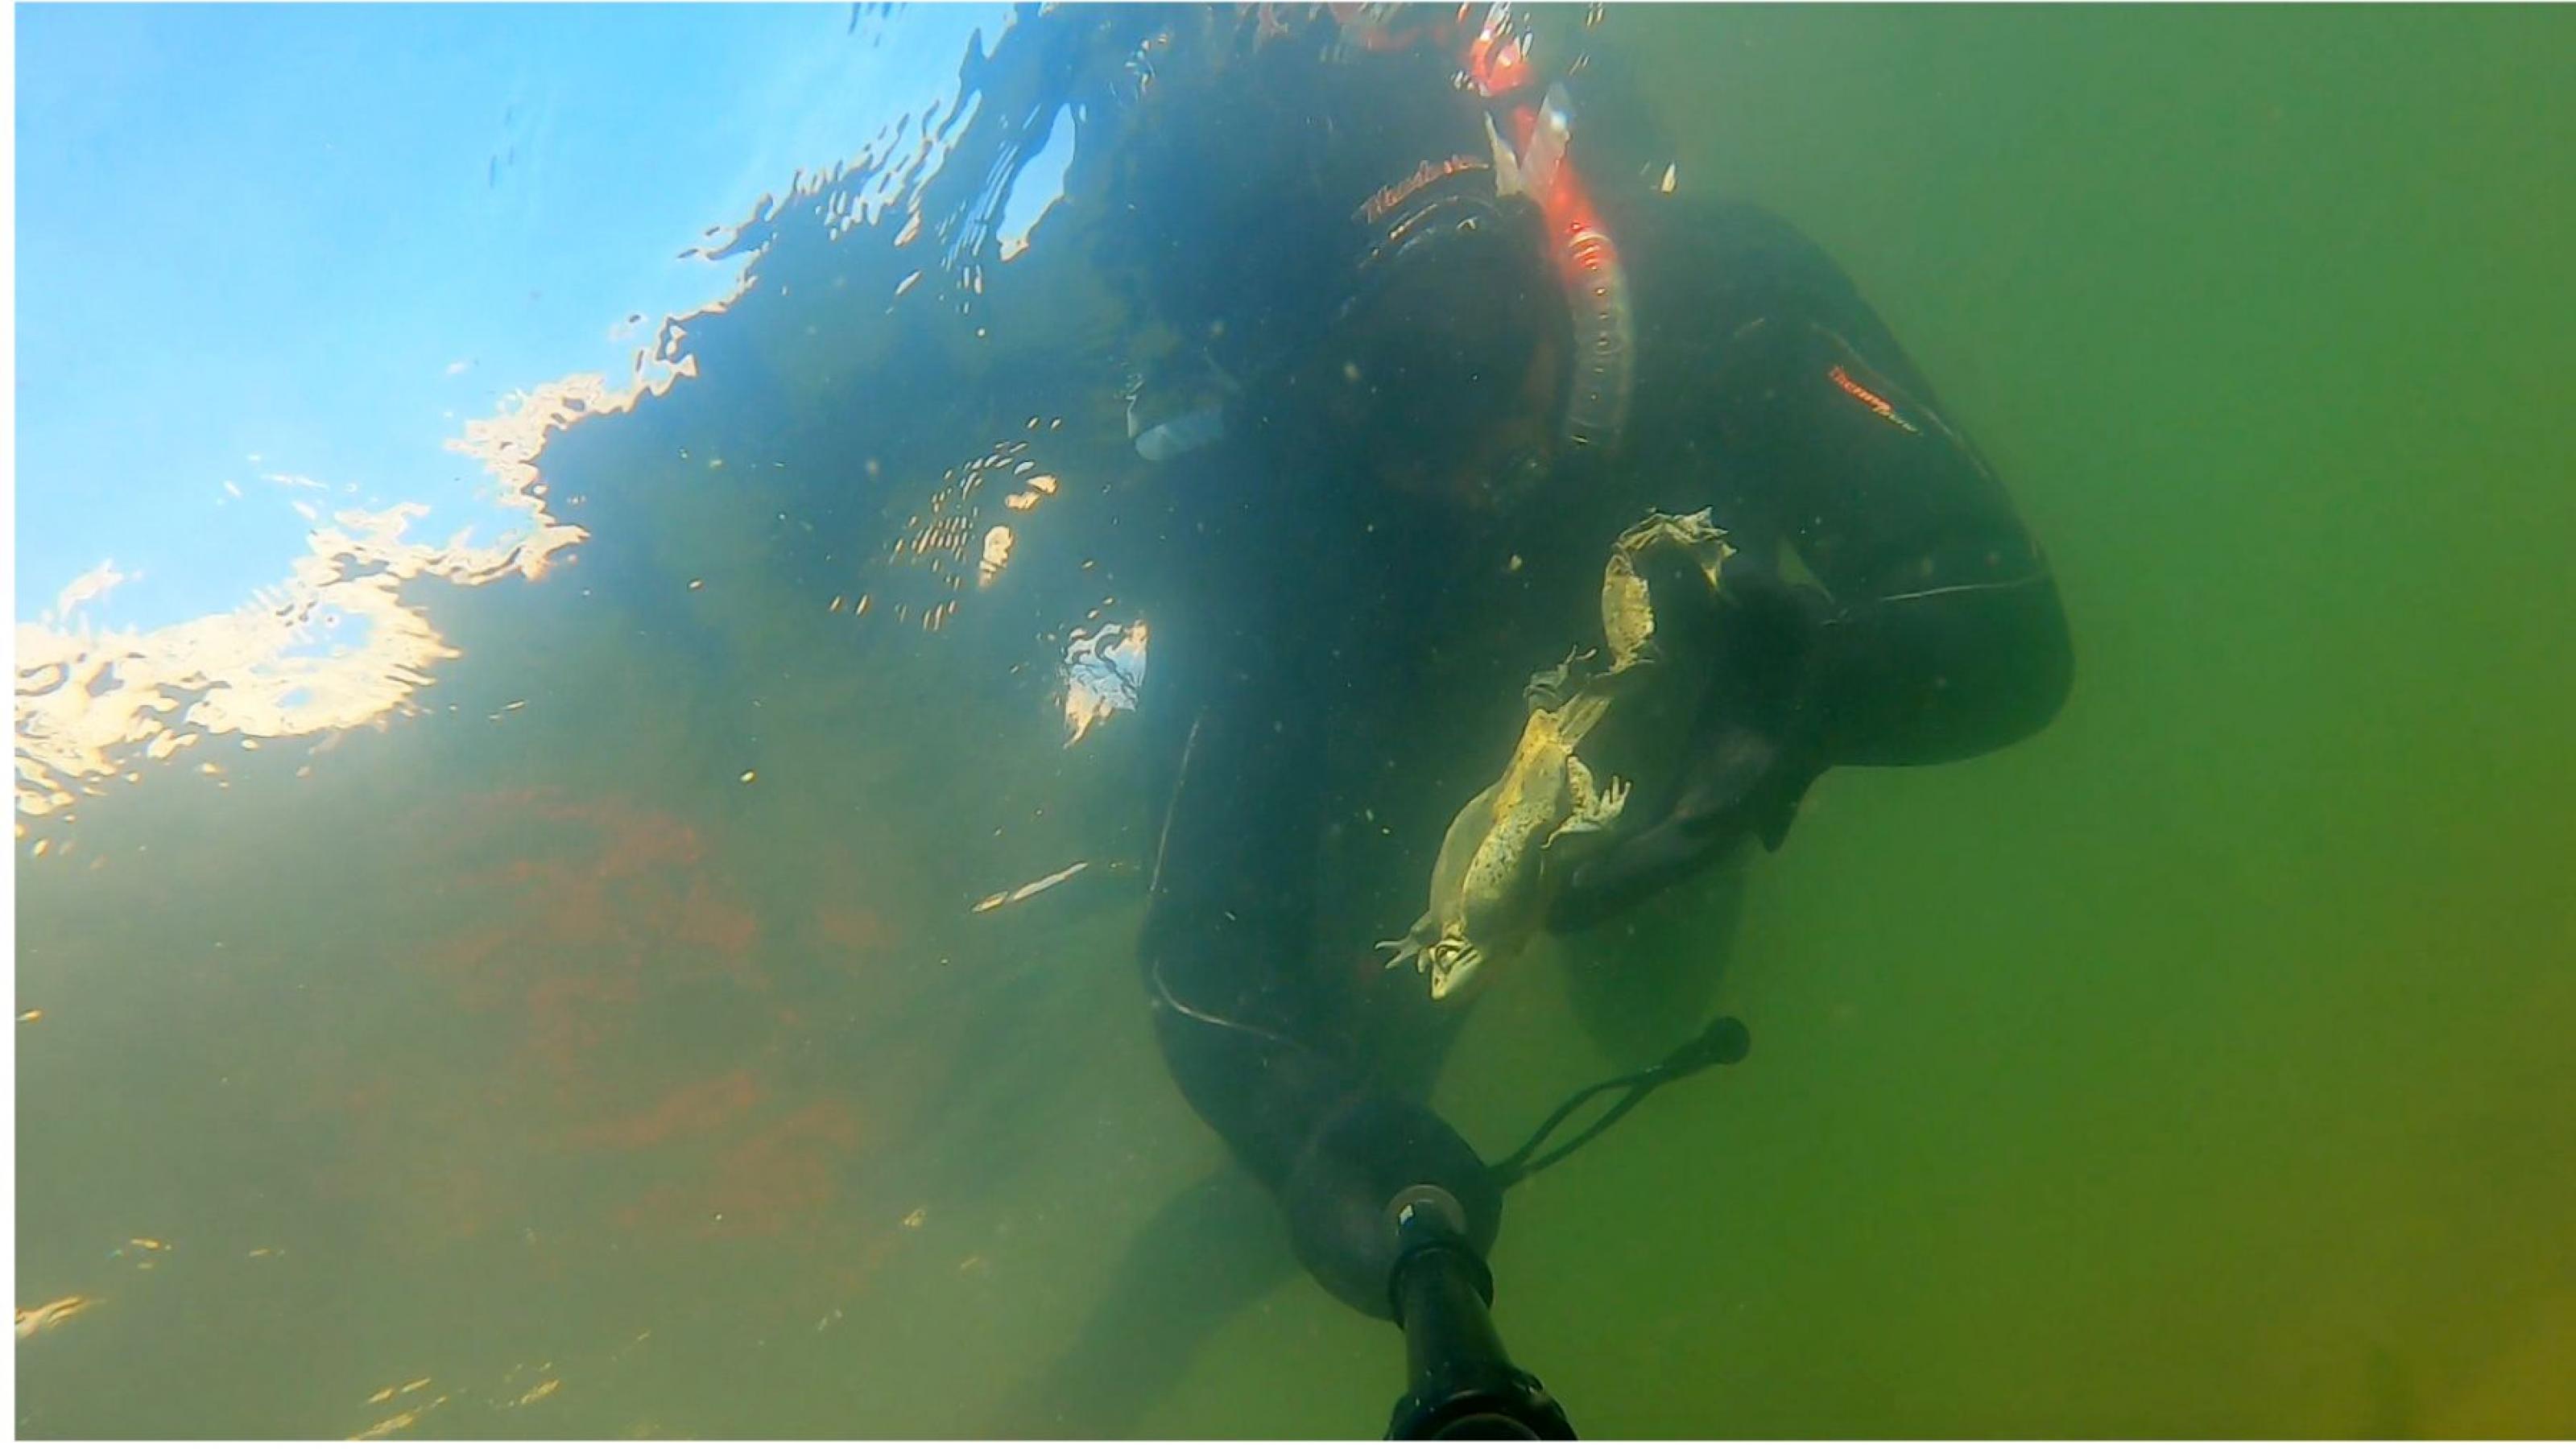 Taucher mit Neopren-Anzug unter Wasser, in einer Hand eine Taschenlampe, in der anderen einen  Frosch.